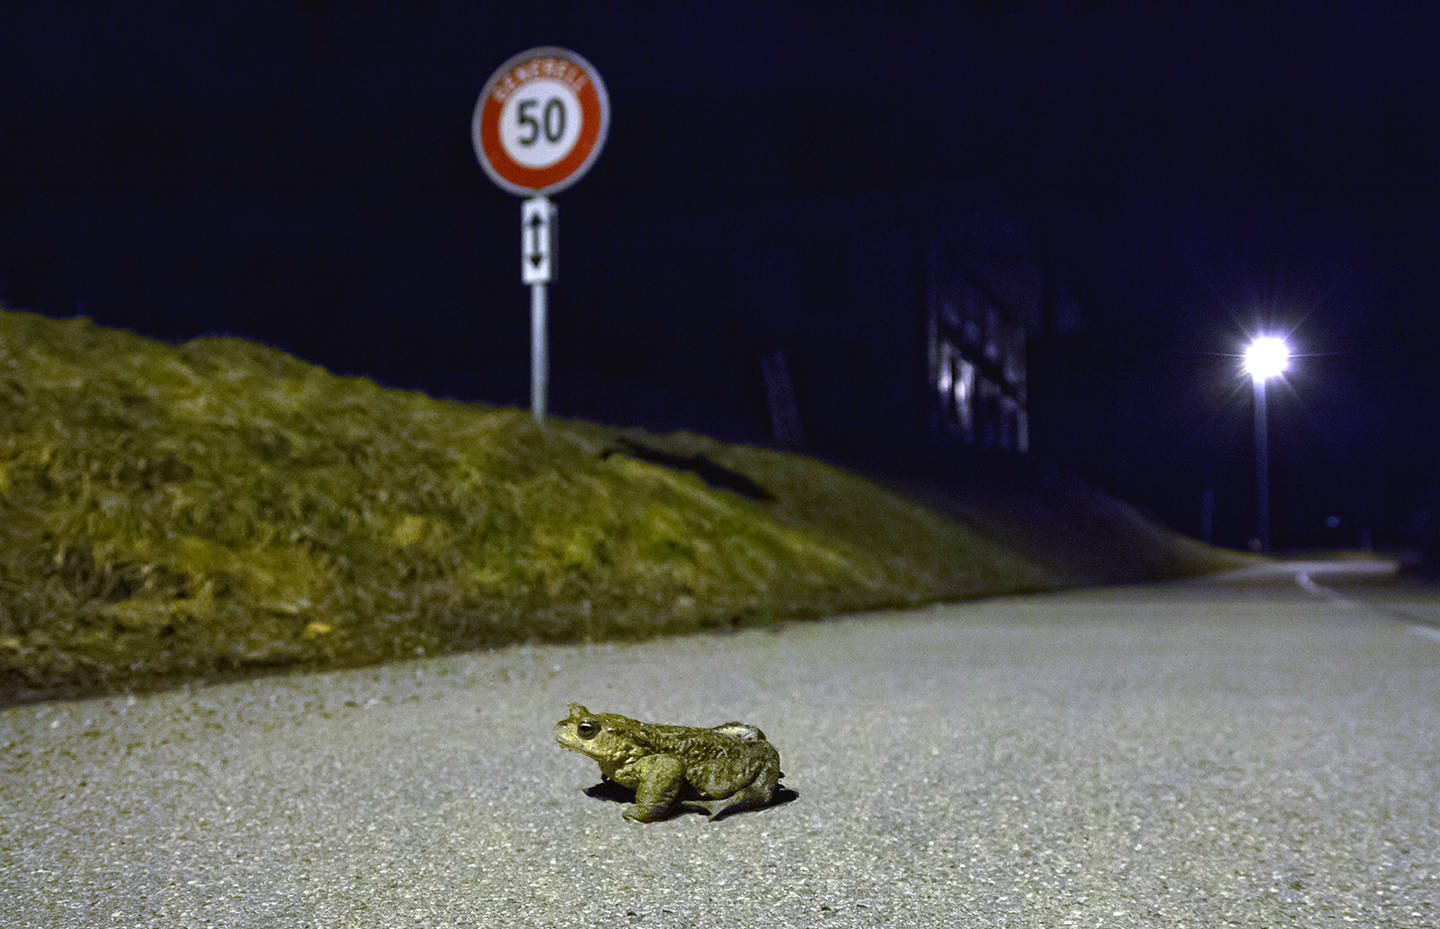 Erdkröte unterwegs auf Strasse